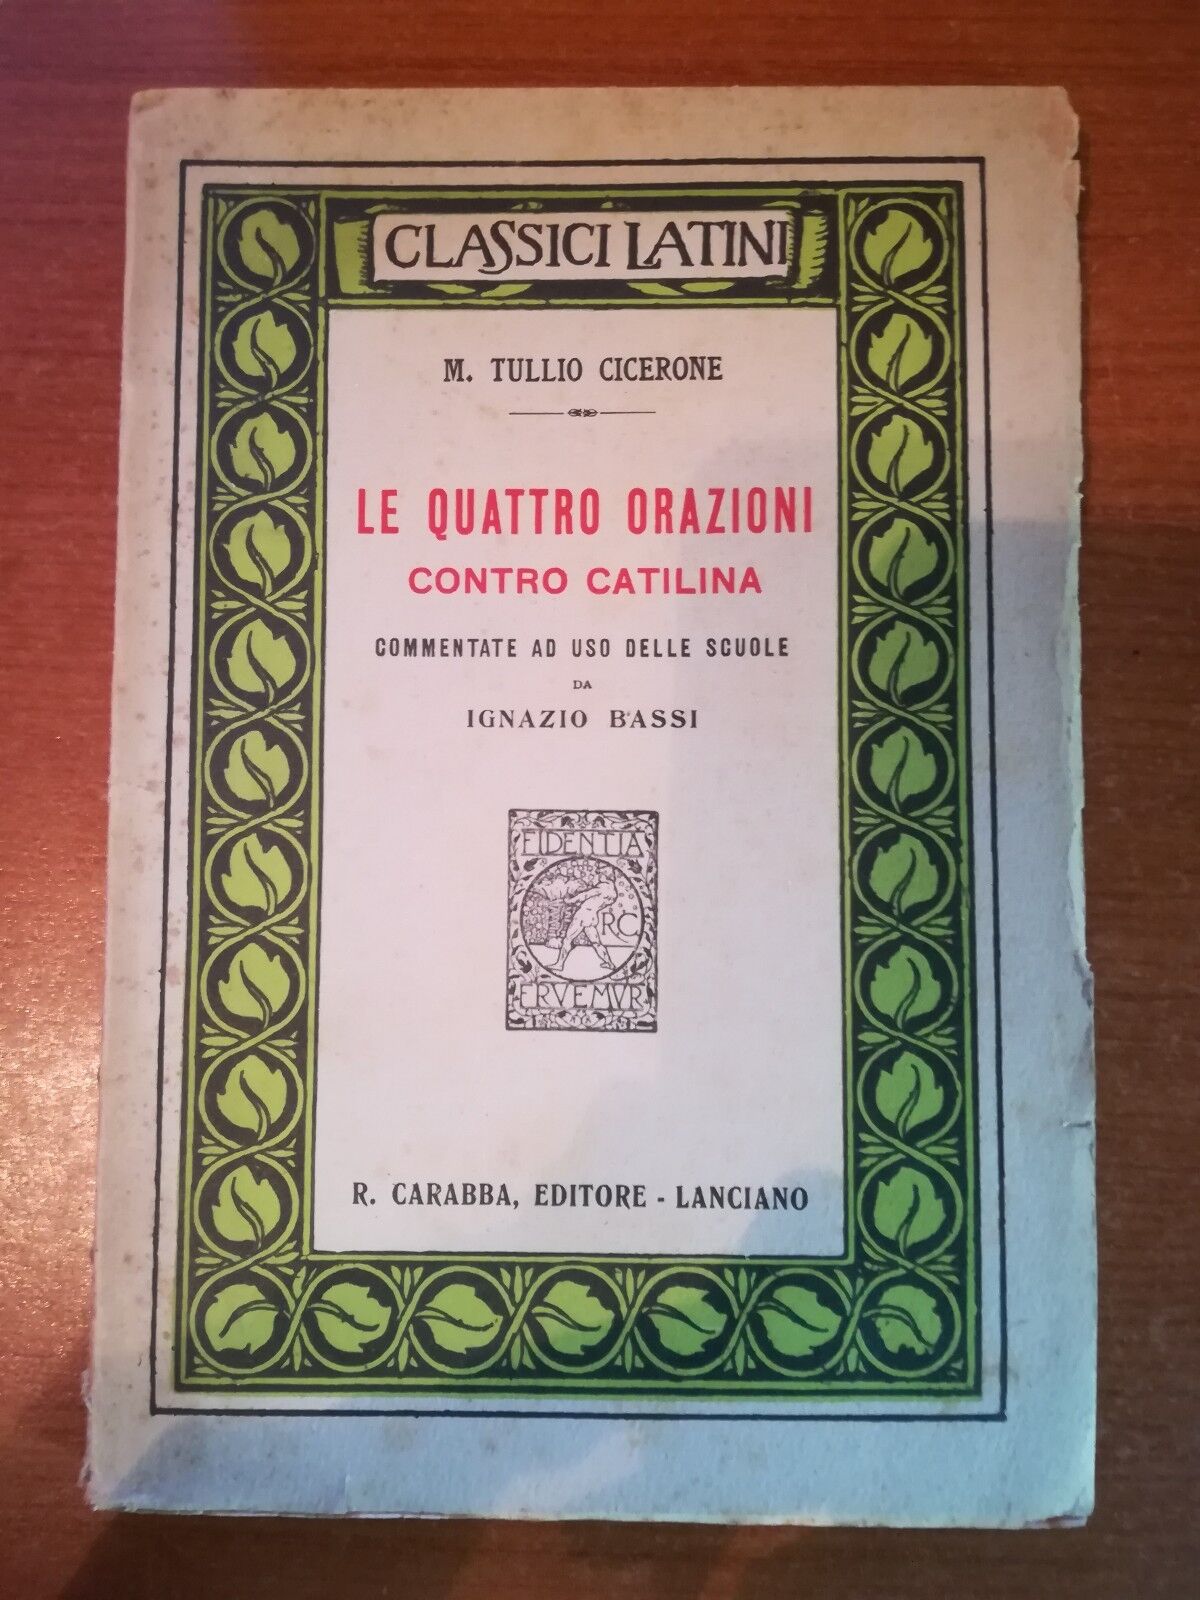 Le quattro orazioni contro catilina - Tullio Cicerone - Carabba - 1927  - M